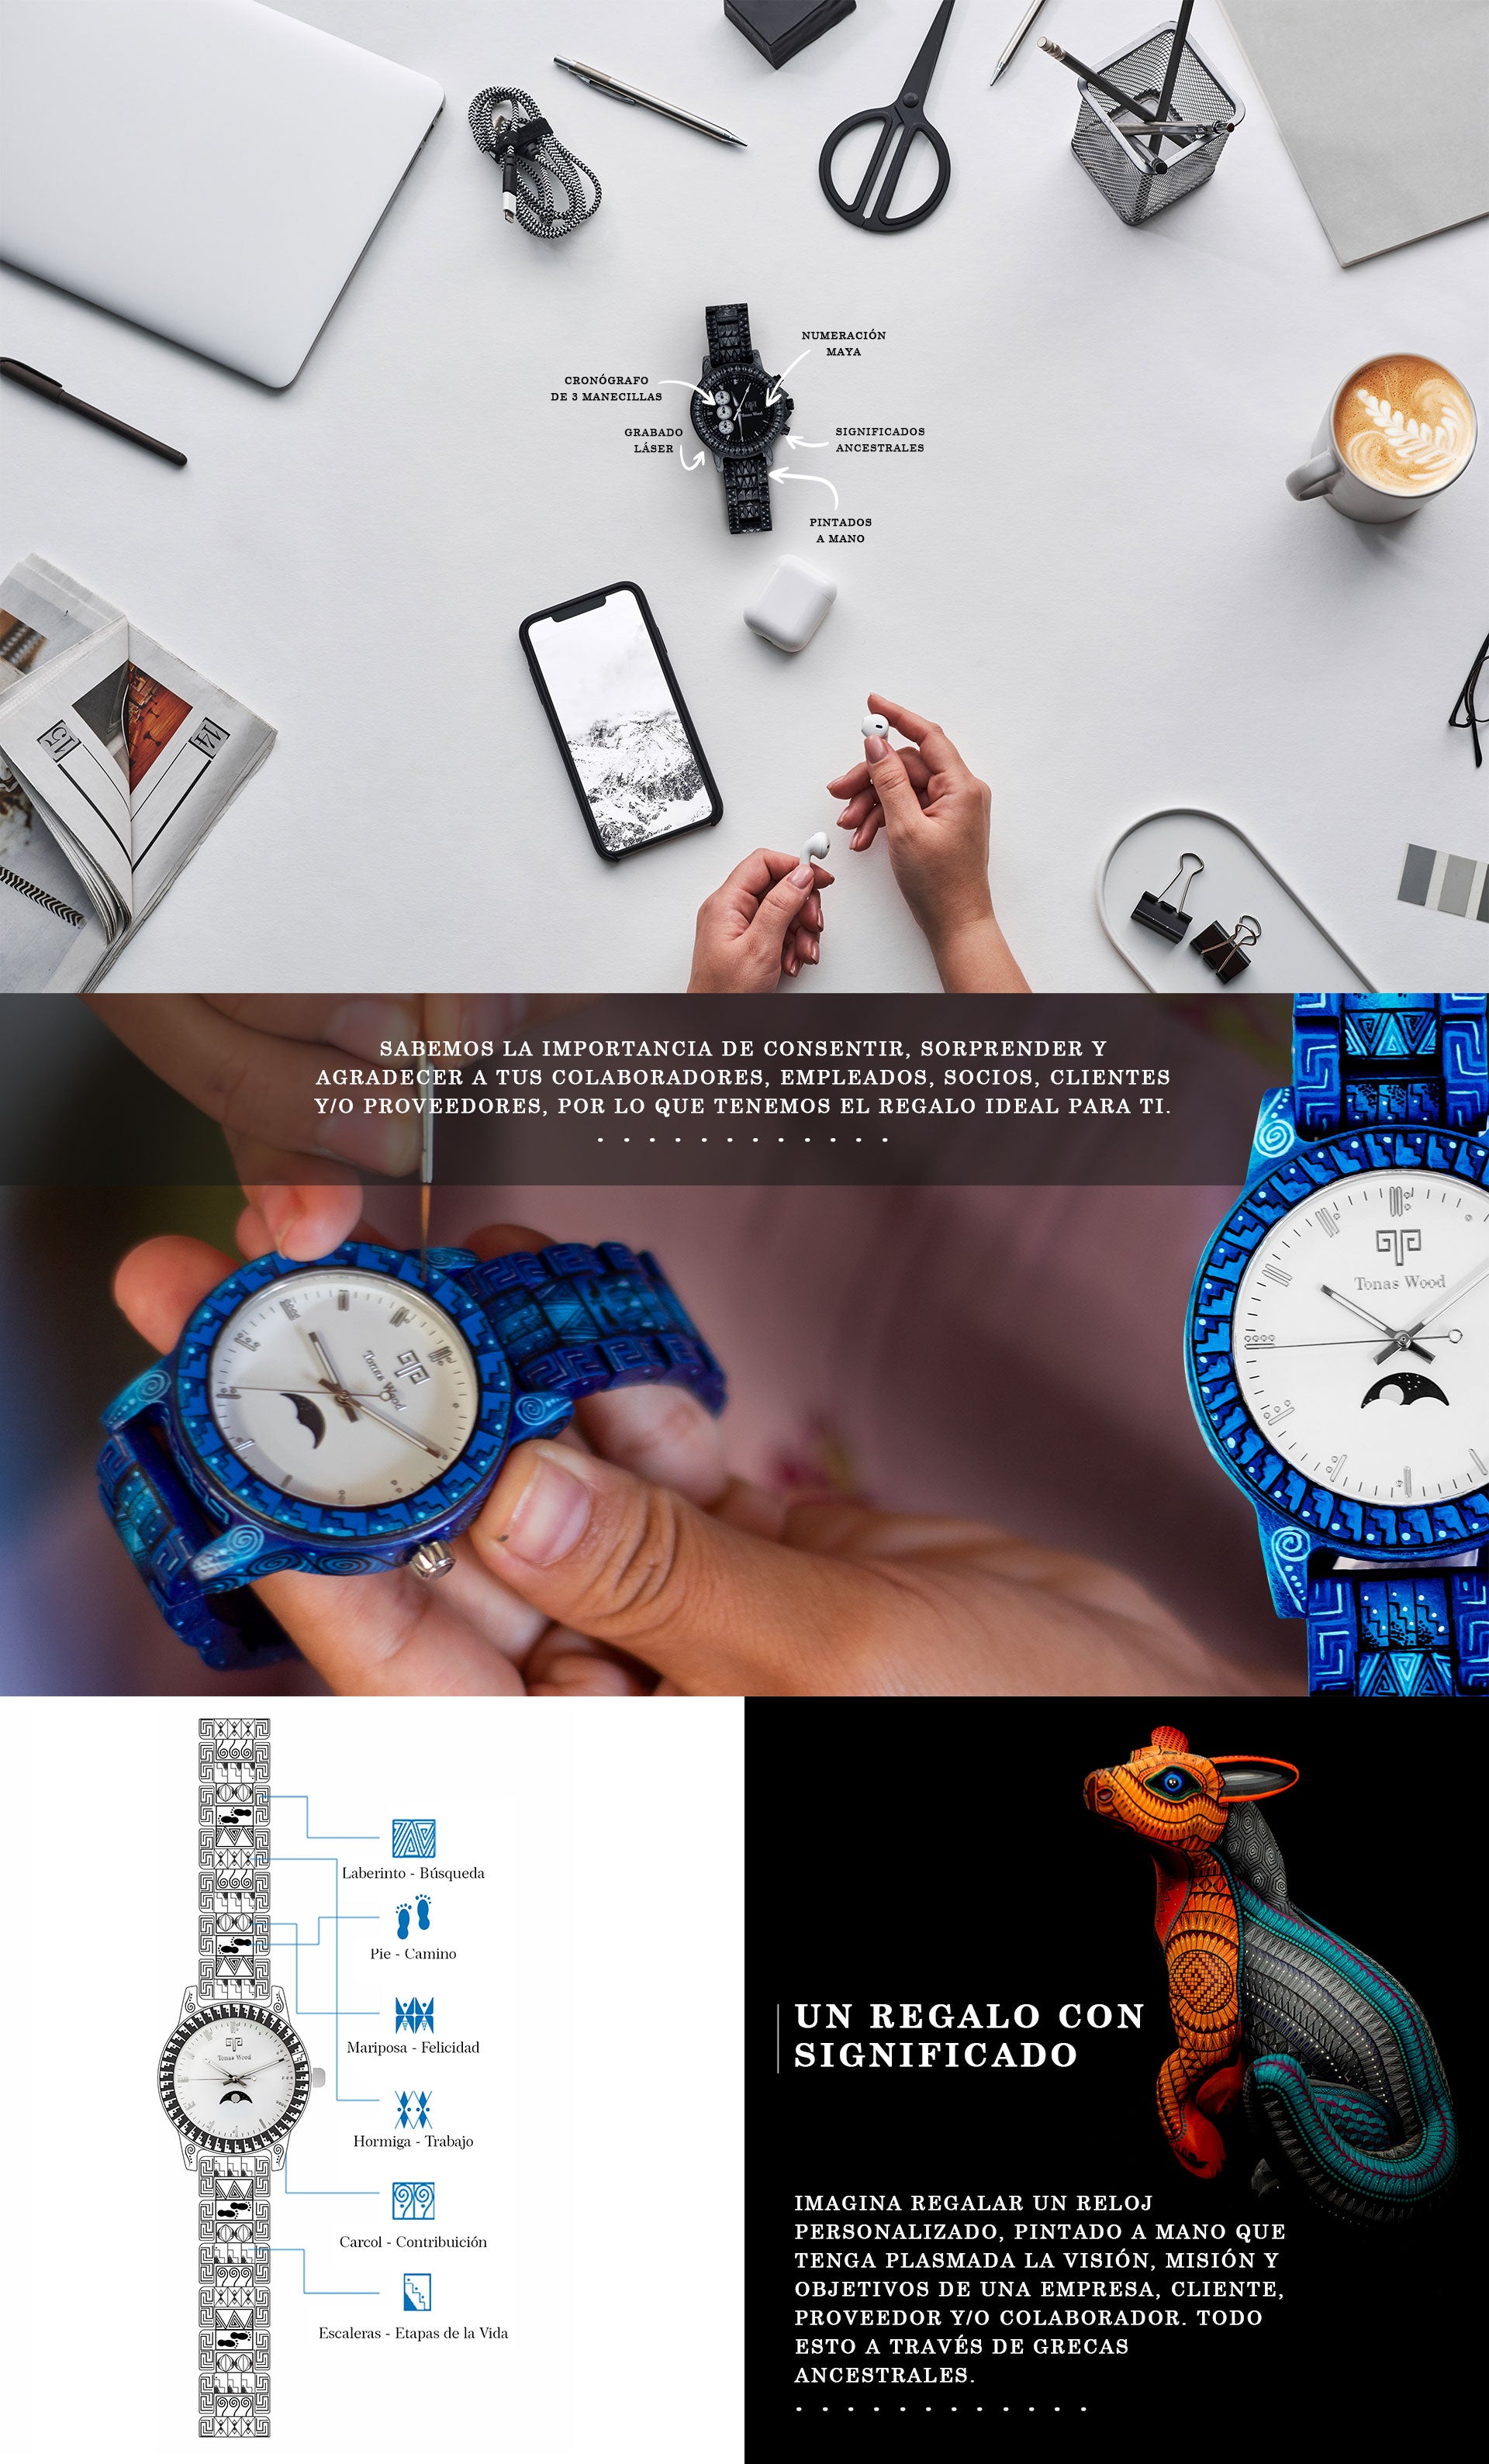 Reloj de Mesa Digital Publicitario Regalos Empresa Personalizados